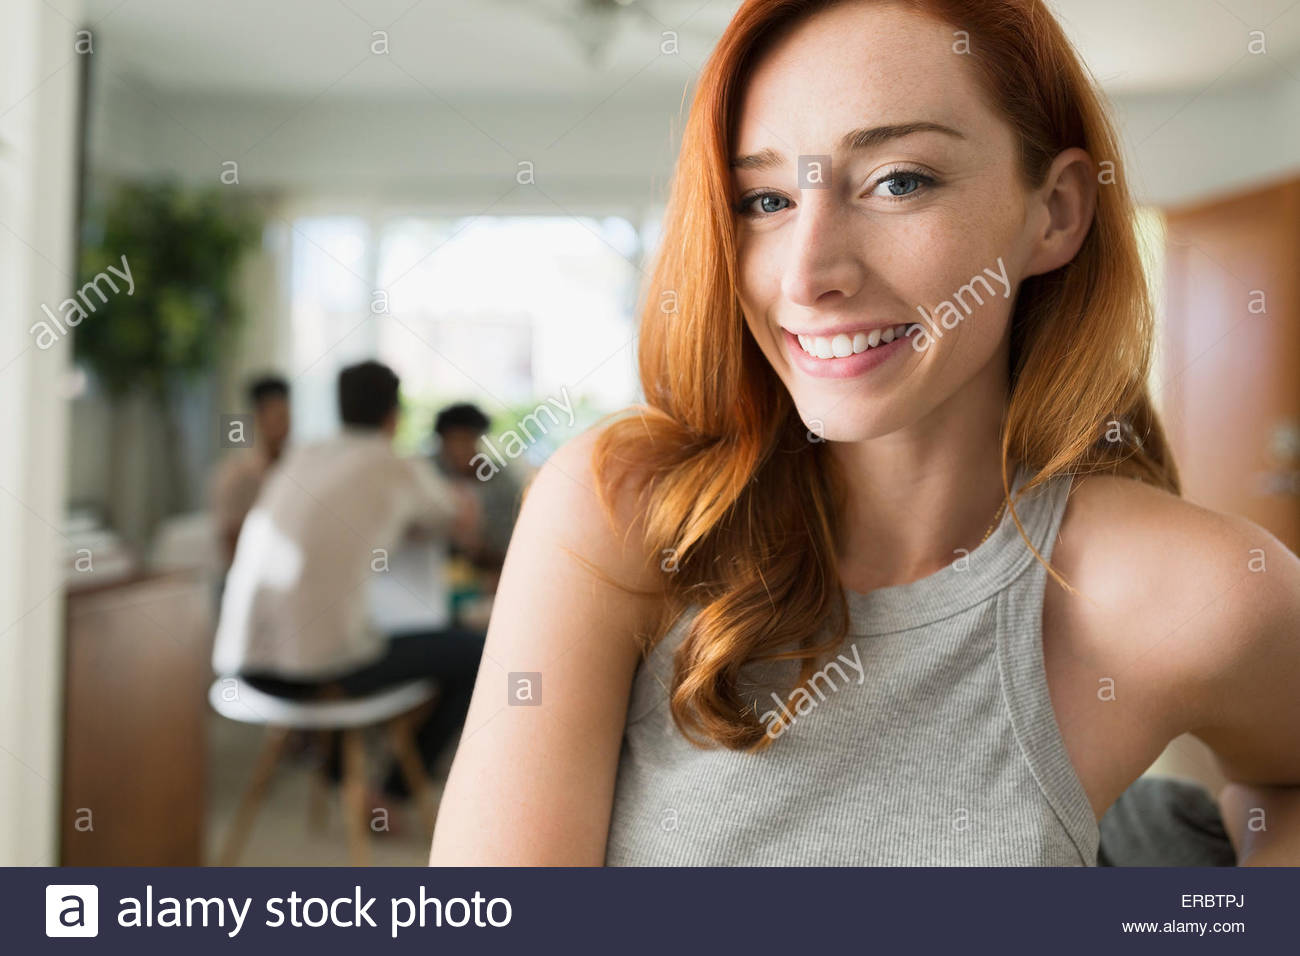 Retrato mujer sonriente con el pelo rojo Foto de stock